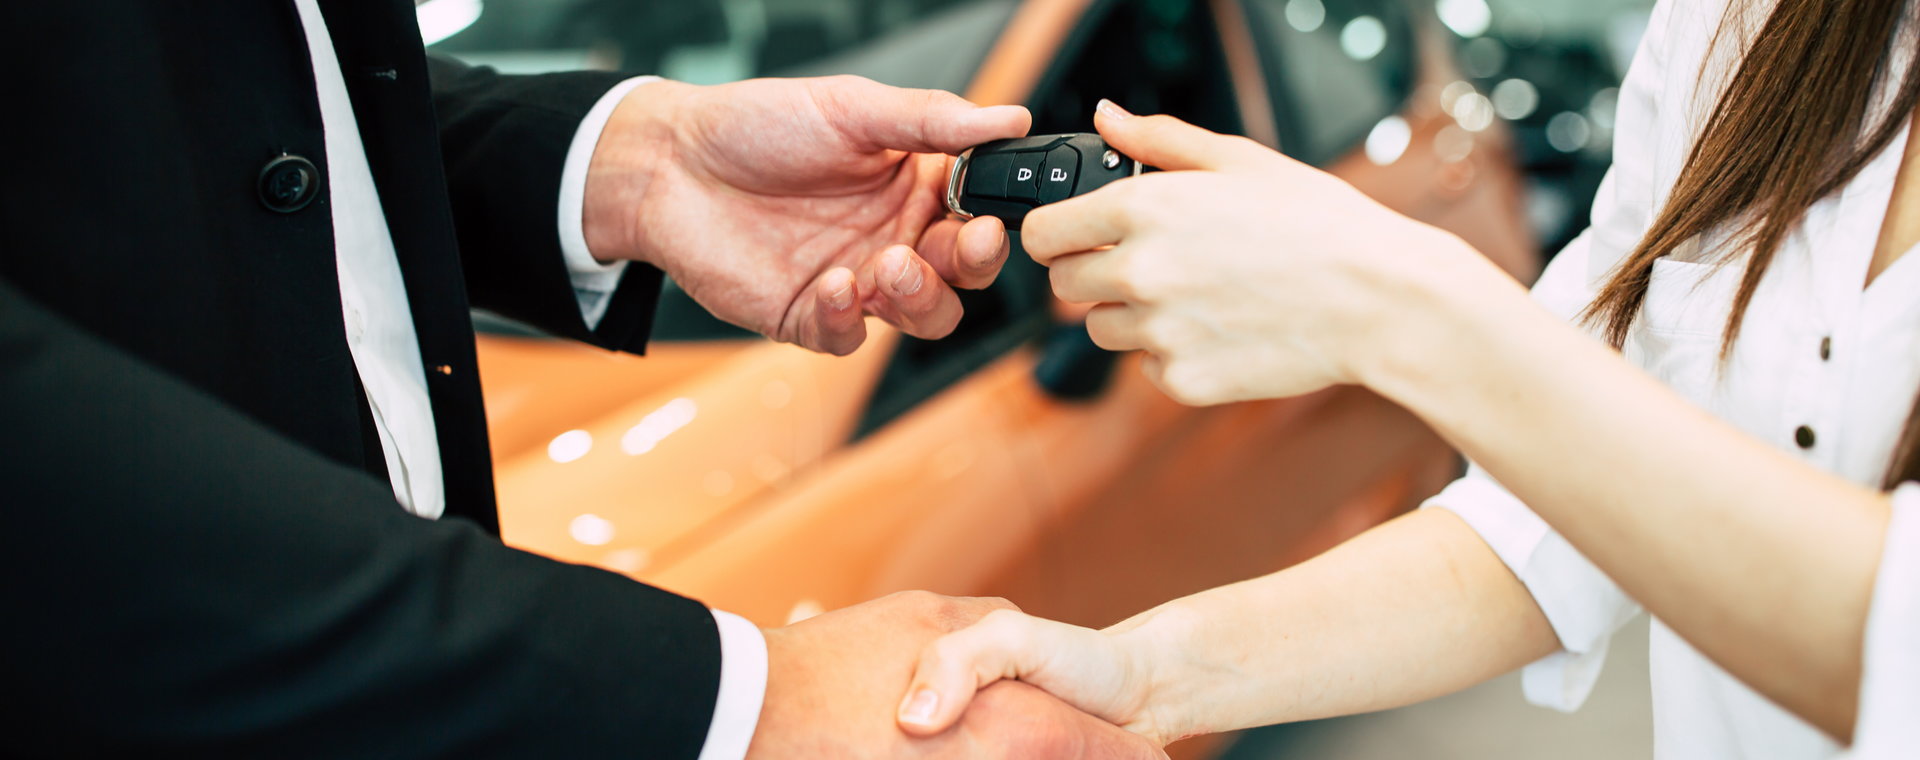 Chcesz darować samochodu po wykupie z leasingu? Zobacz co z podatkami